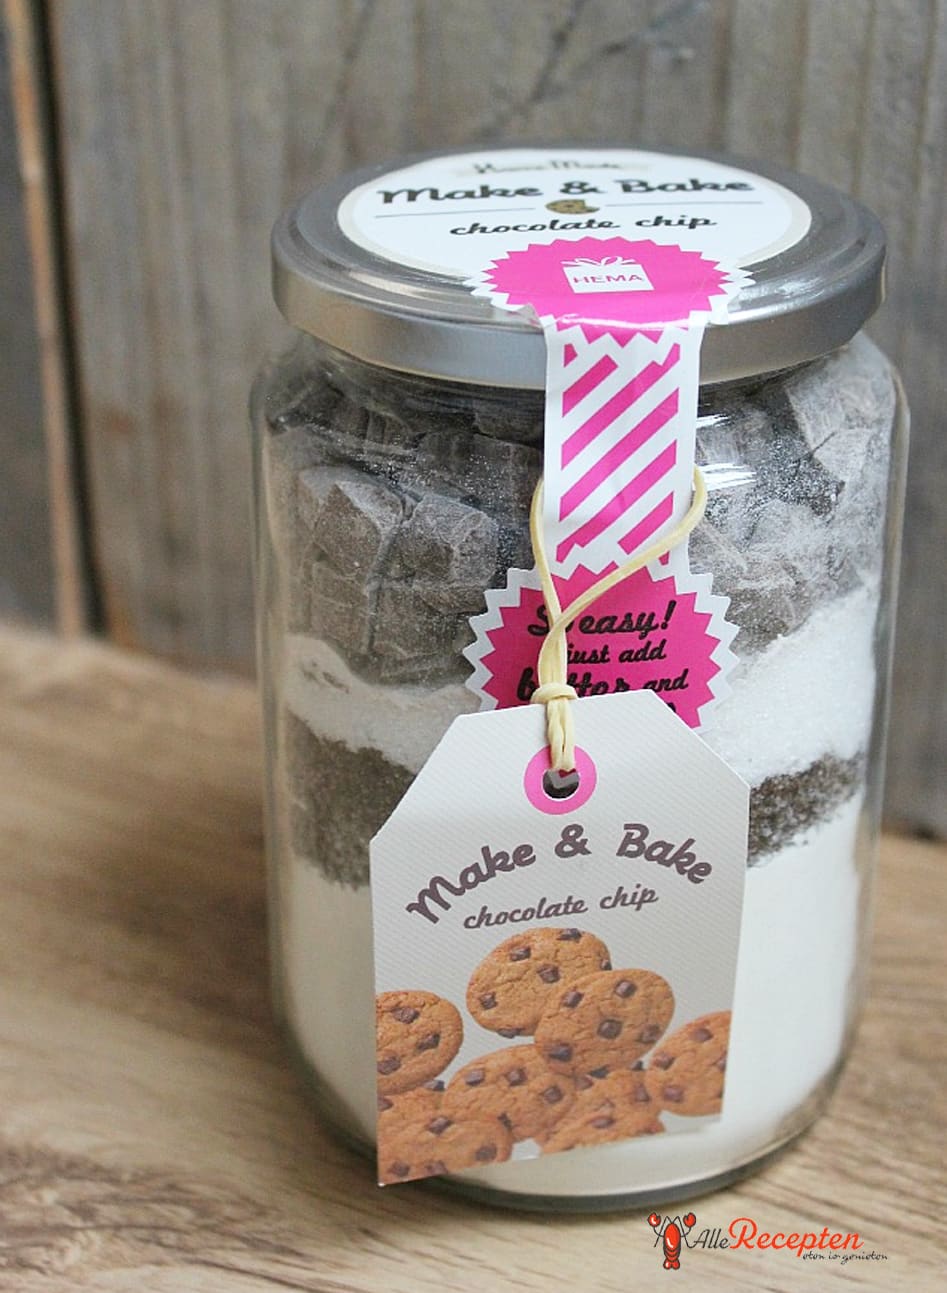 Getest: make chocolate chip cookies van Hema - Sos